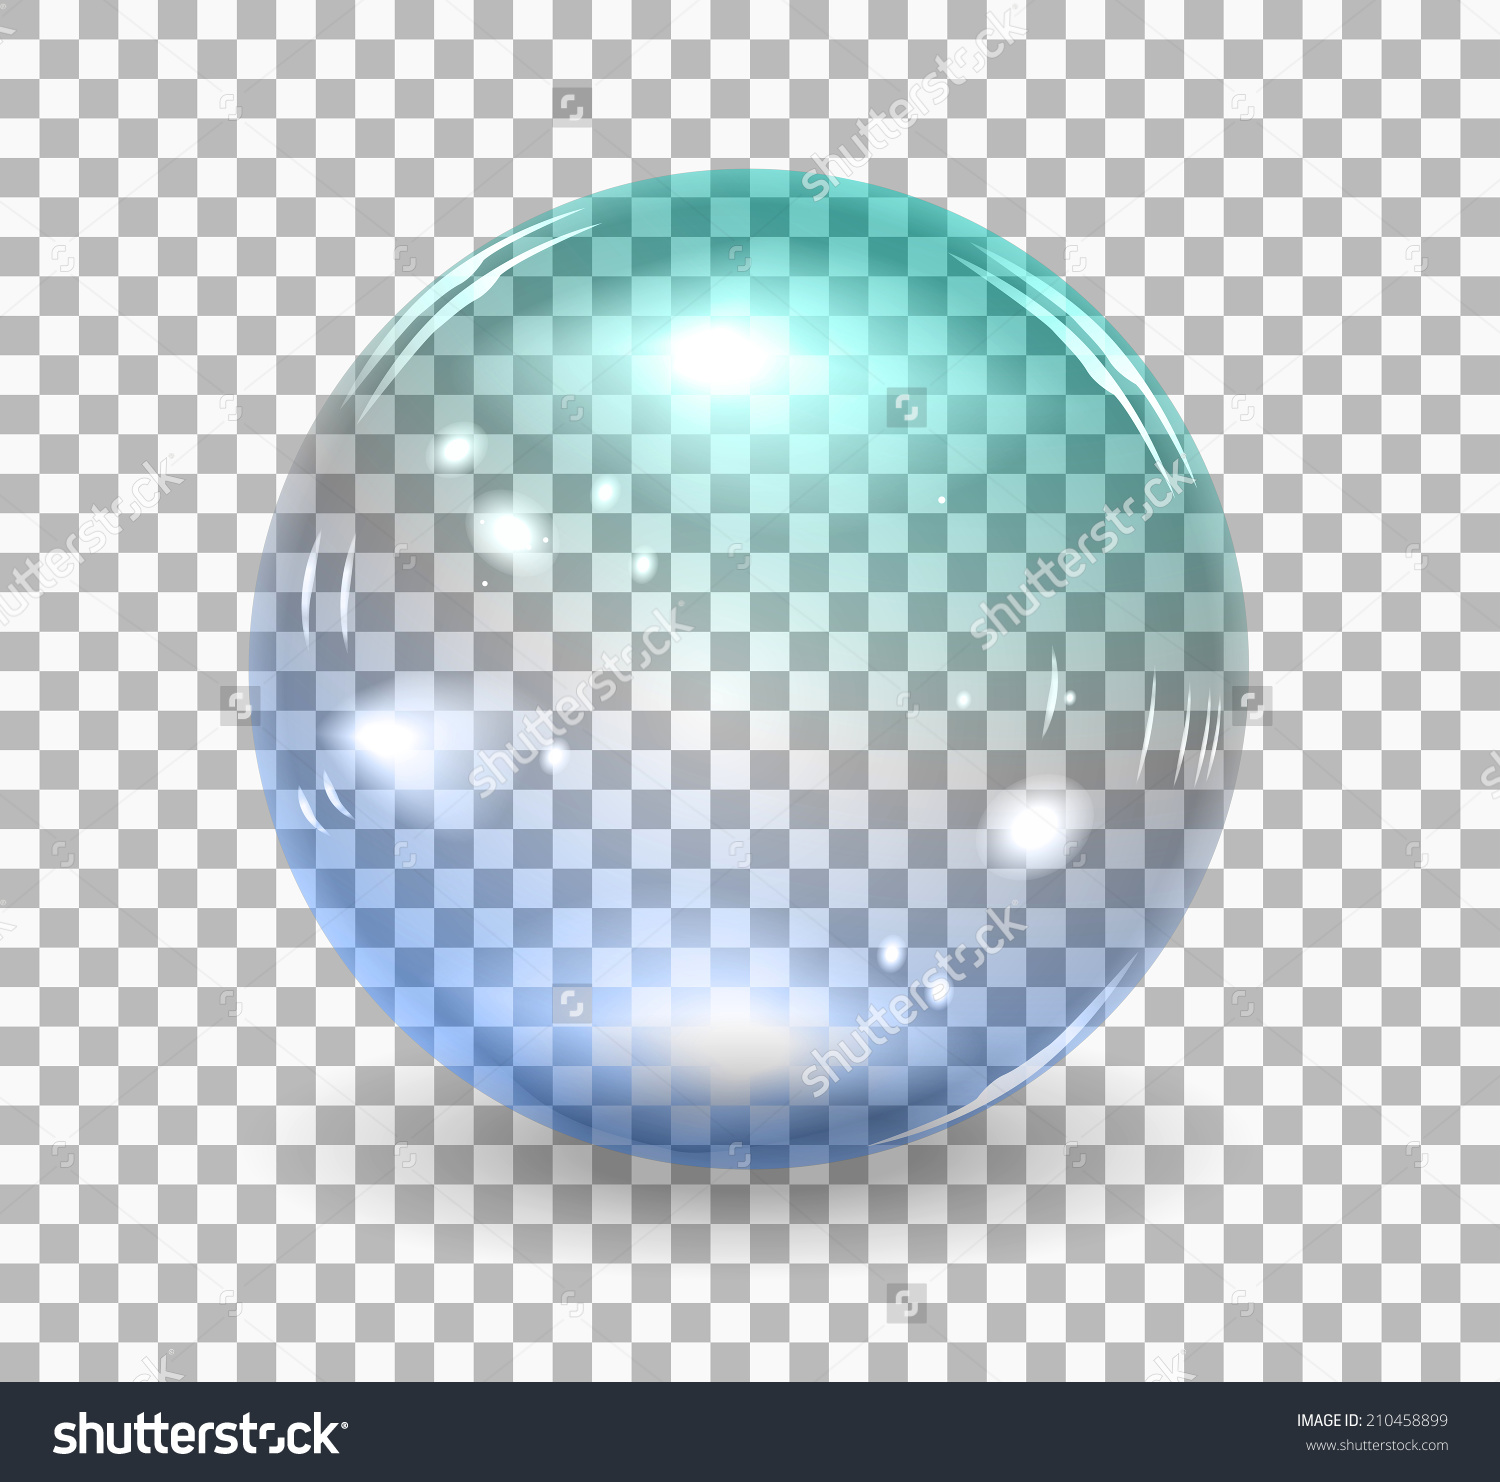 bubbles clipart transparent background